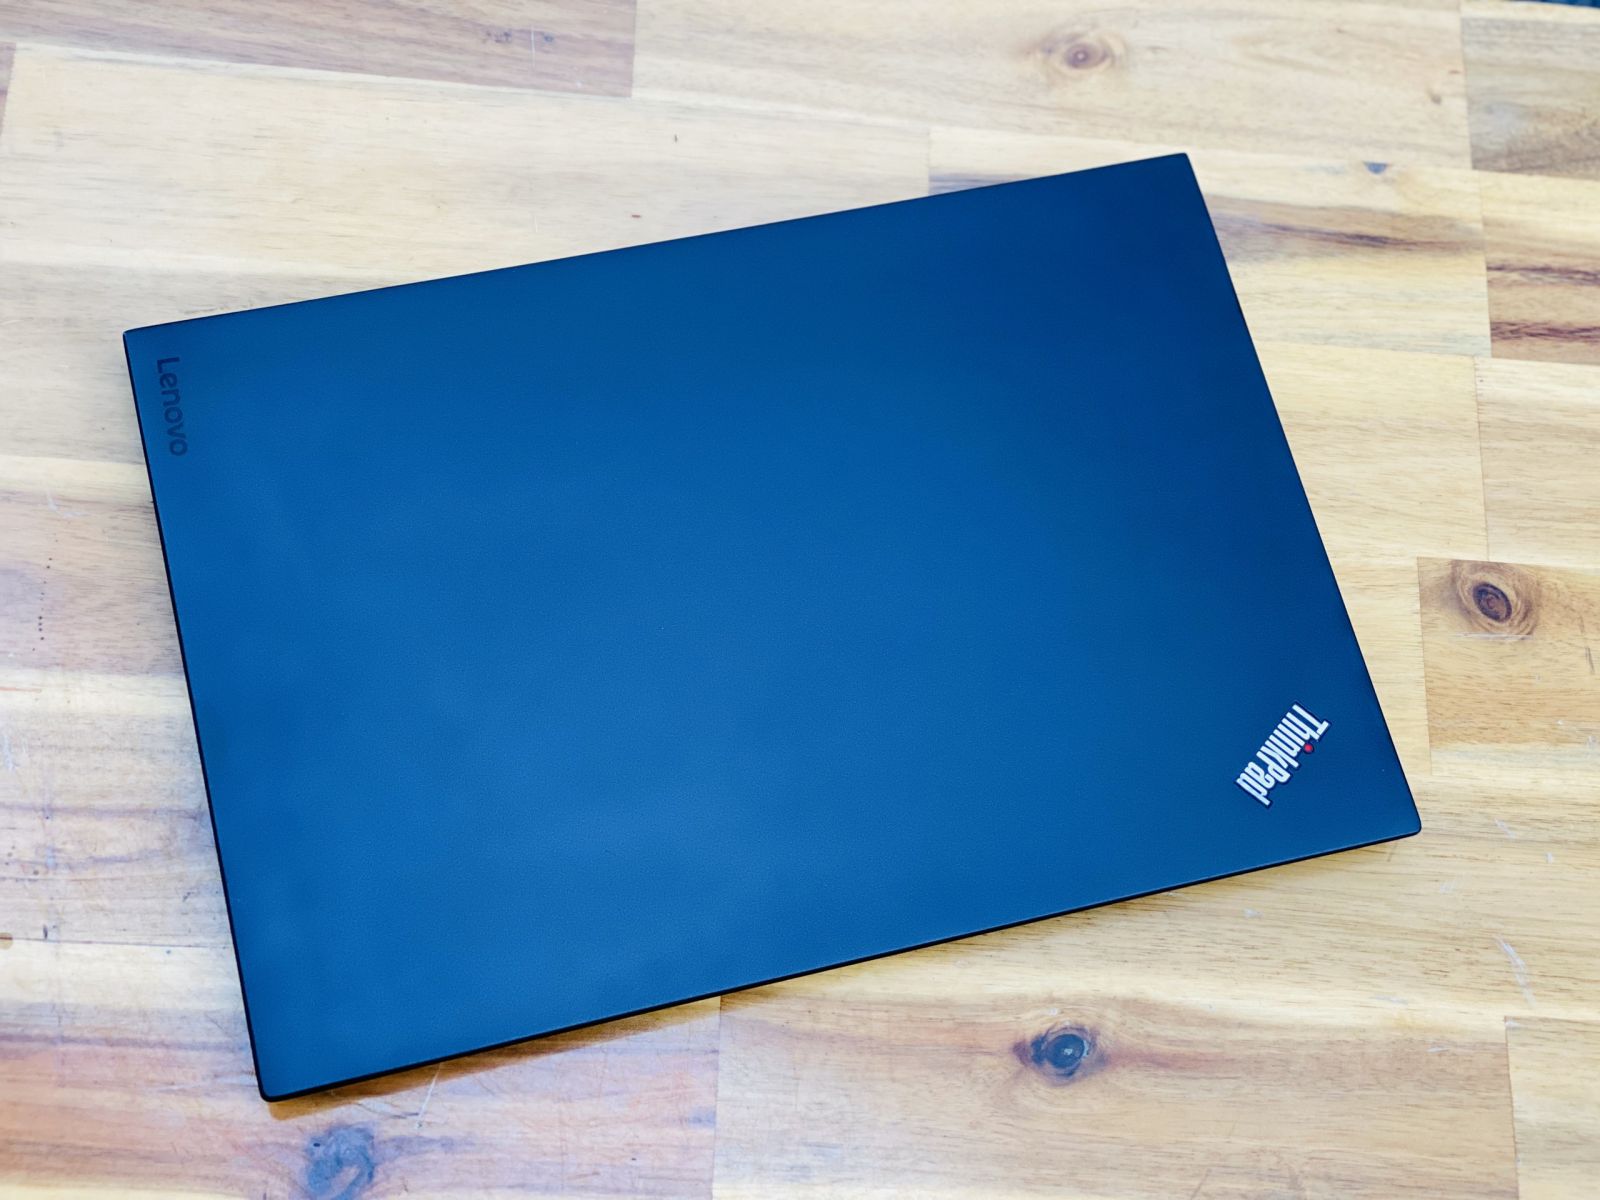 Laptop Lenovo Thinkpad X1 Carbon Gen 4/ i5 6300U/ 8G/ SSD256/ Siêu Bền/ Đẹp Keng/ Giá rẻ3